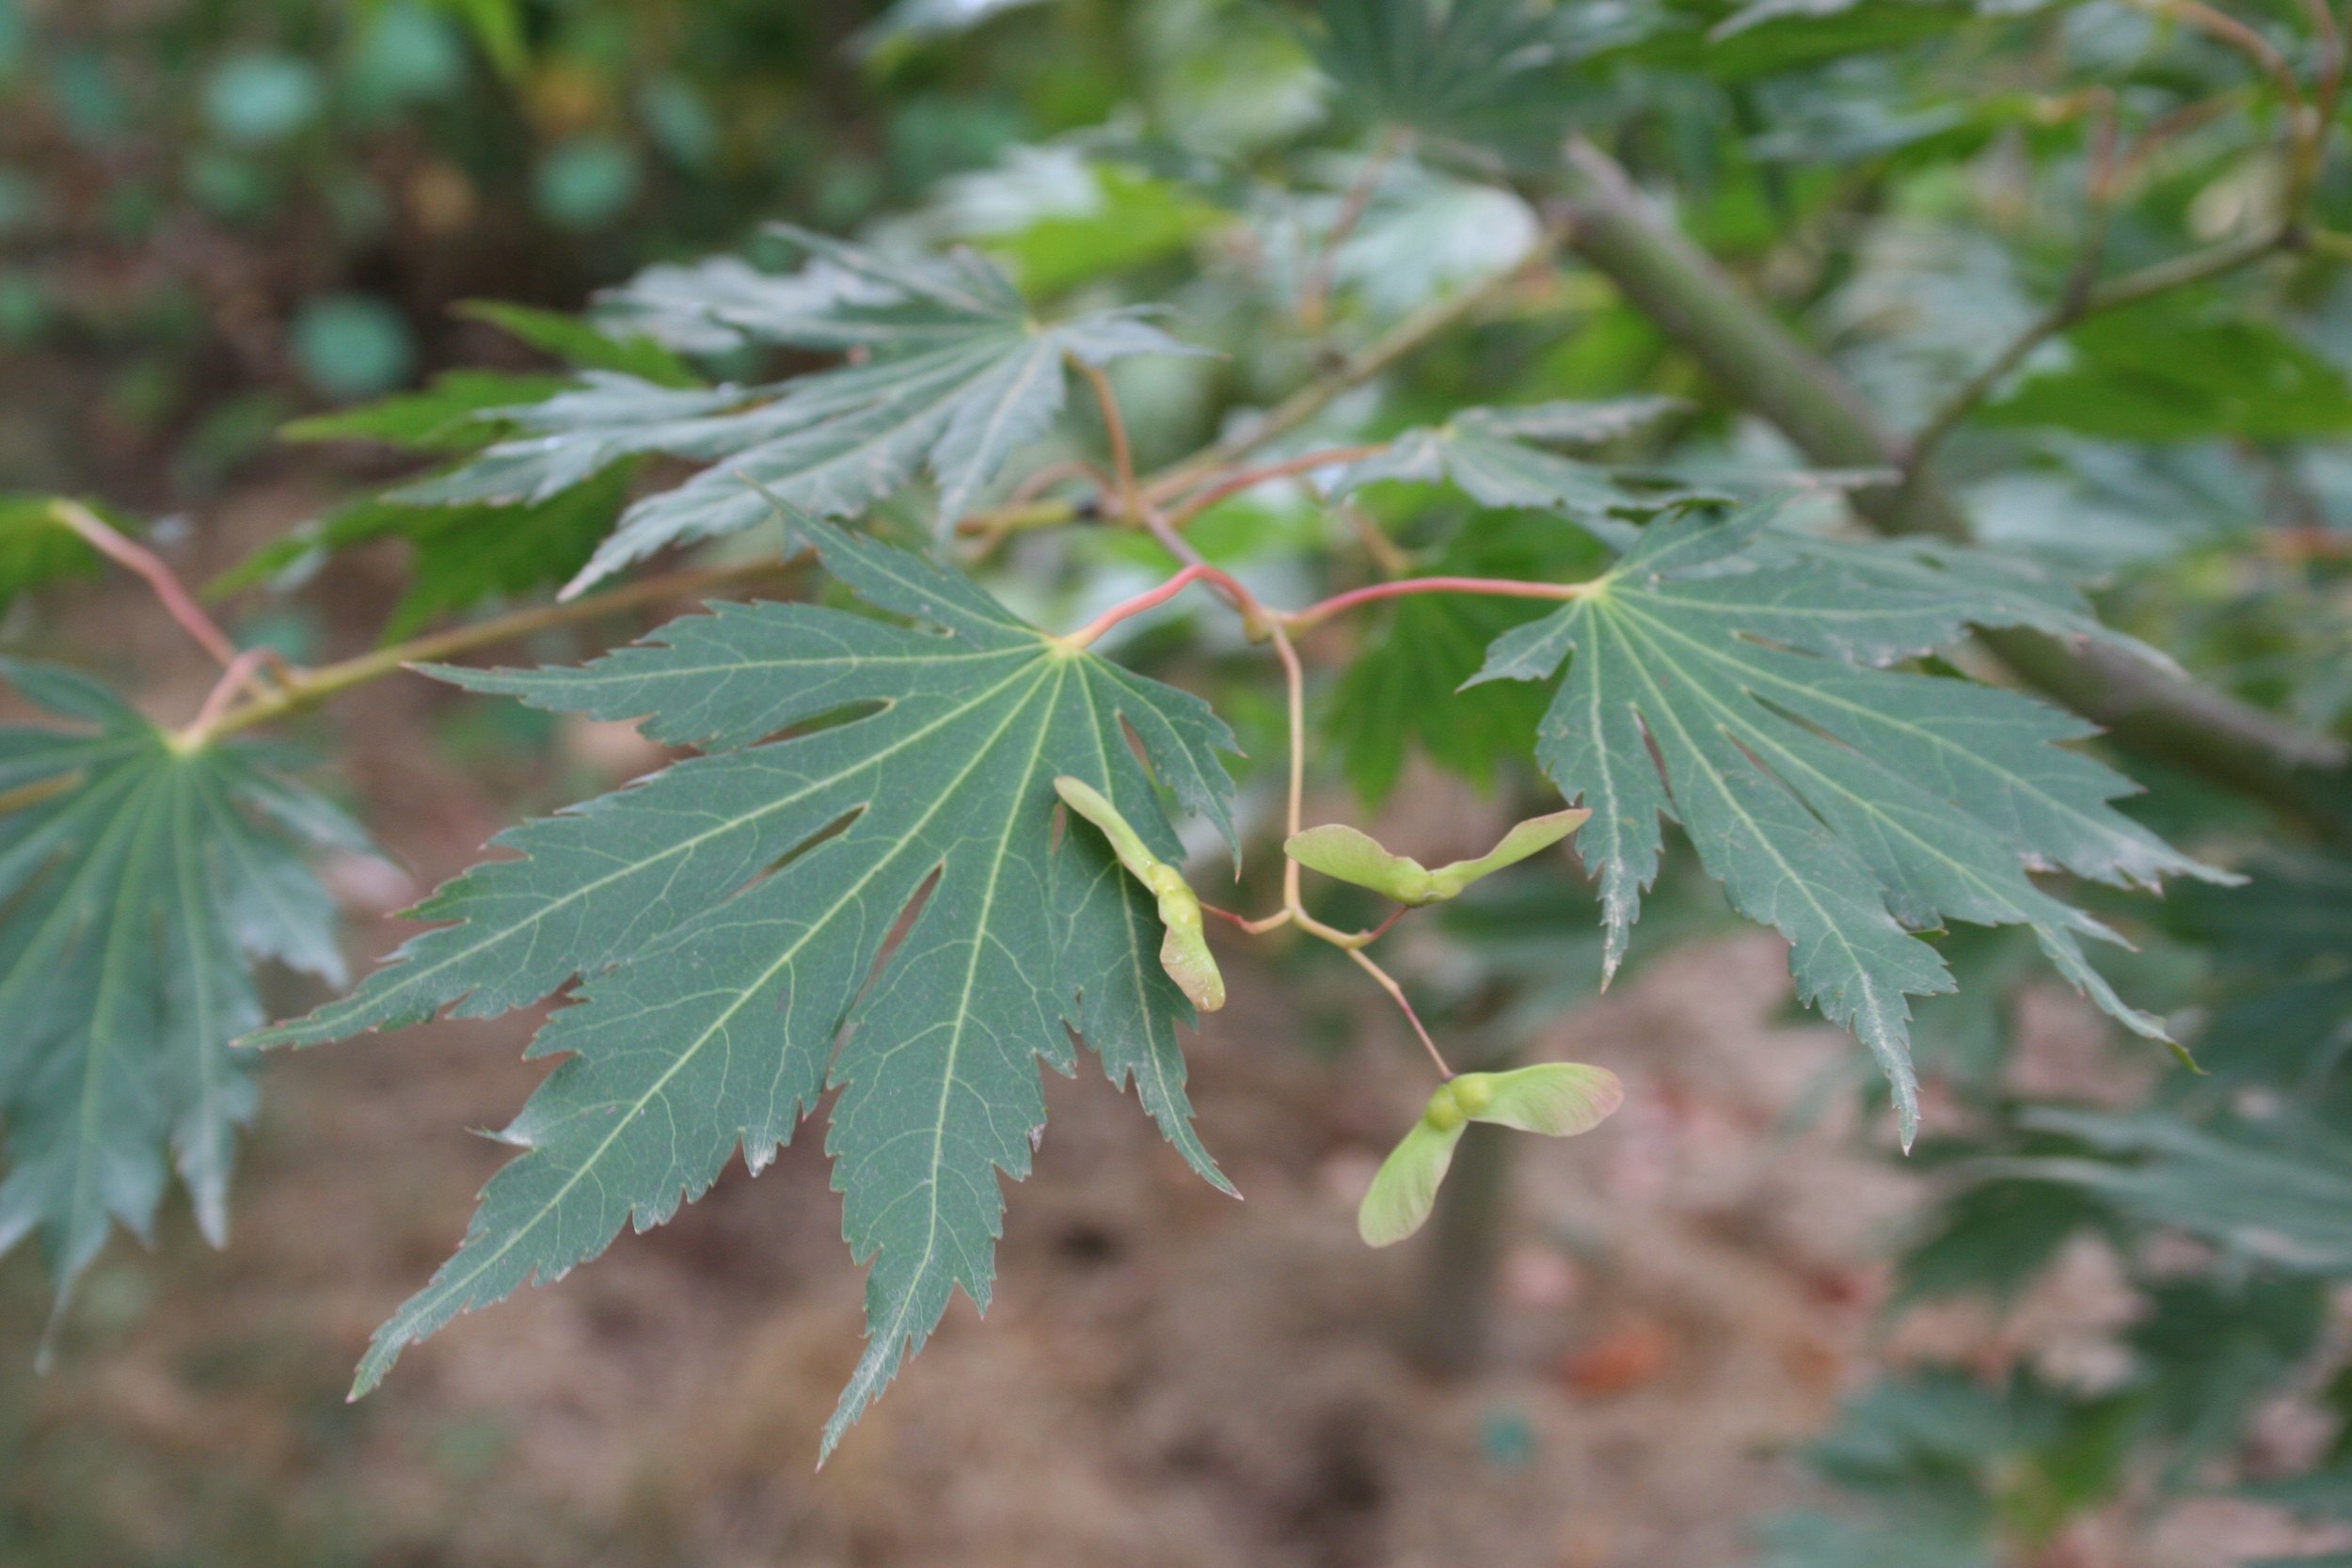 Copy of Northern Glow Maple grn leaf 02.jpg